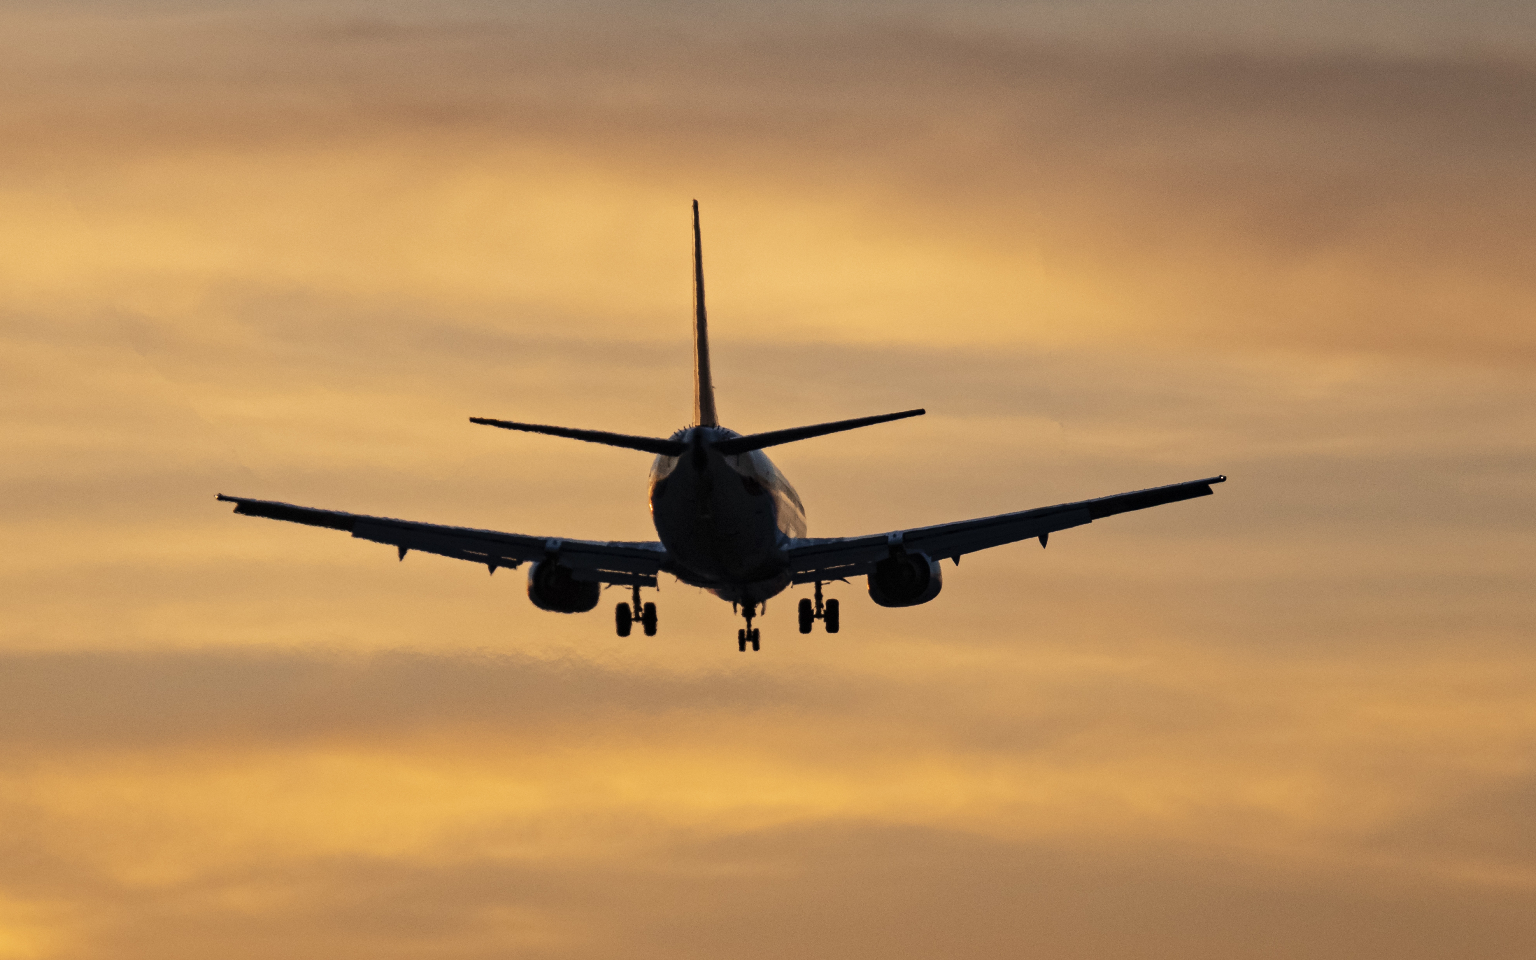 Греческий Boeing без разрешения прилетел в Кишинев и был задержан